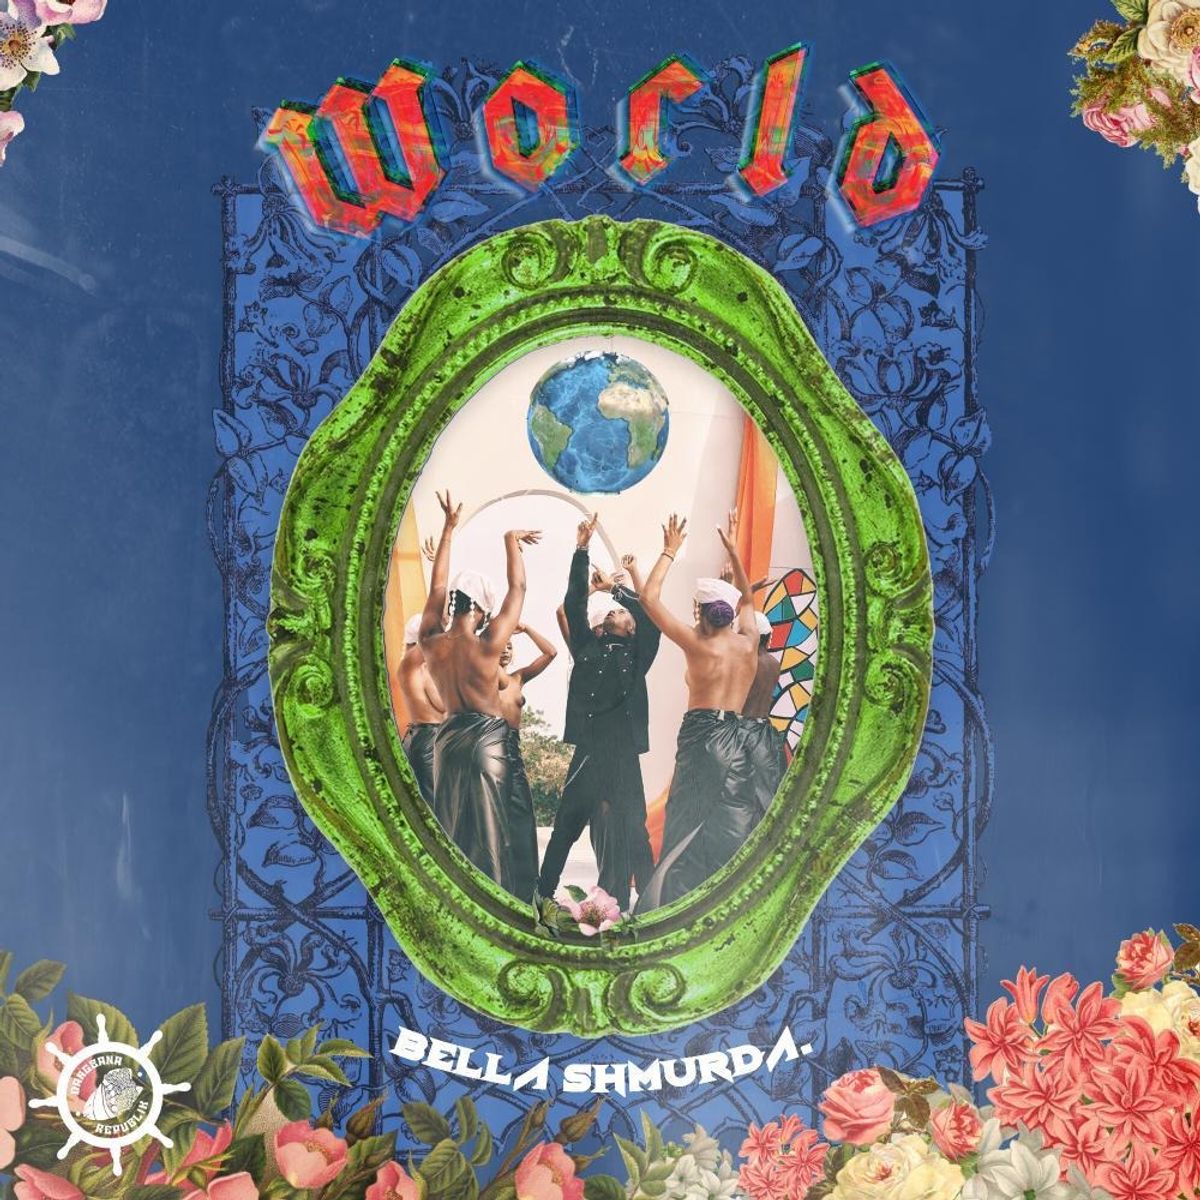 Bella Shmurda & Dangbana Republik - World